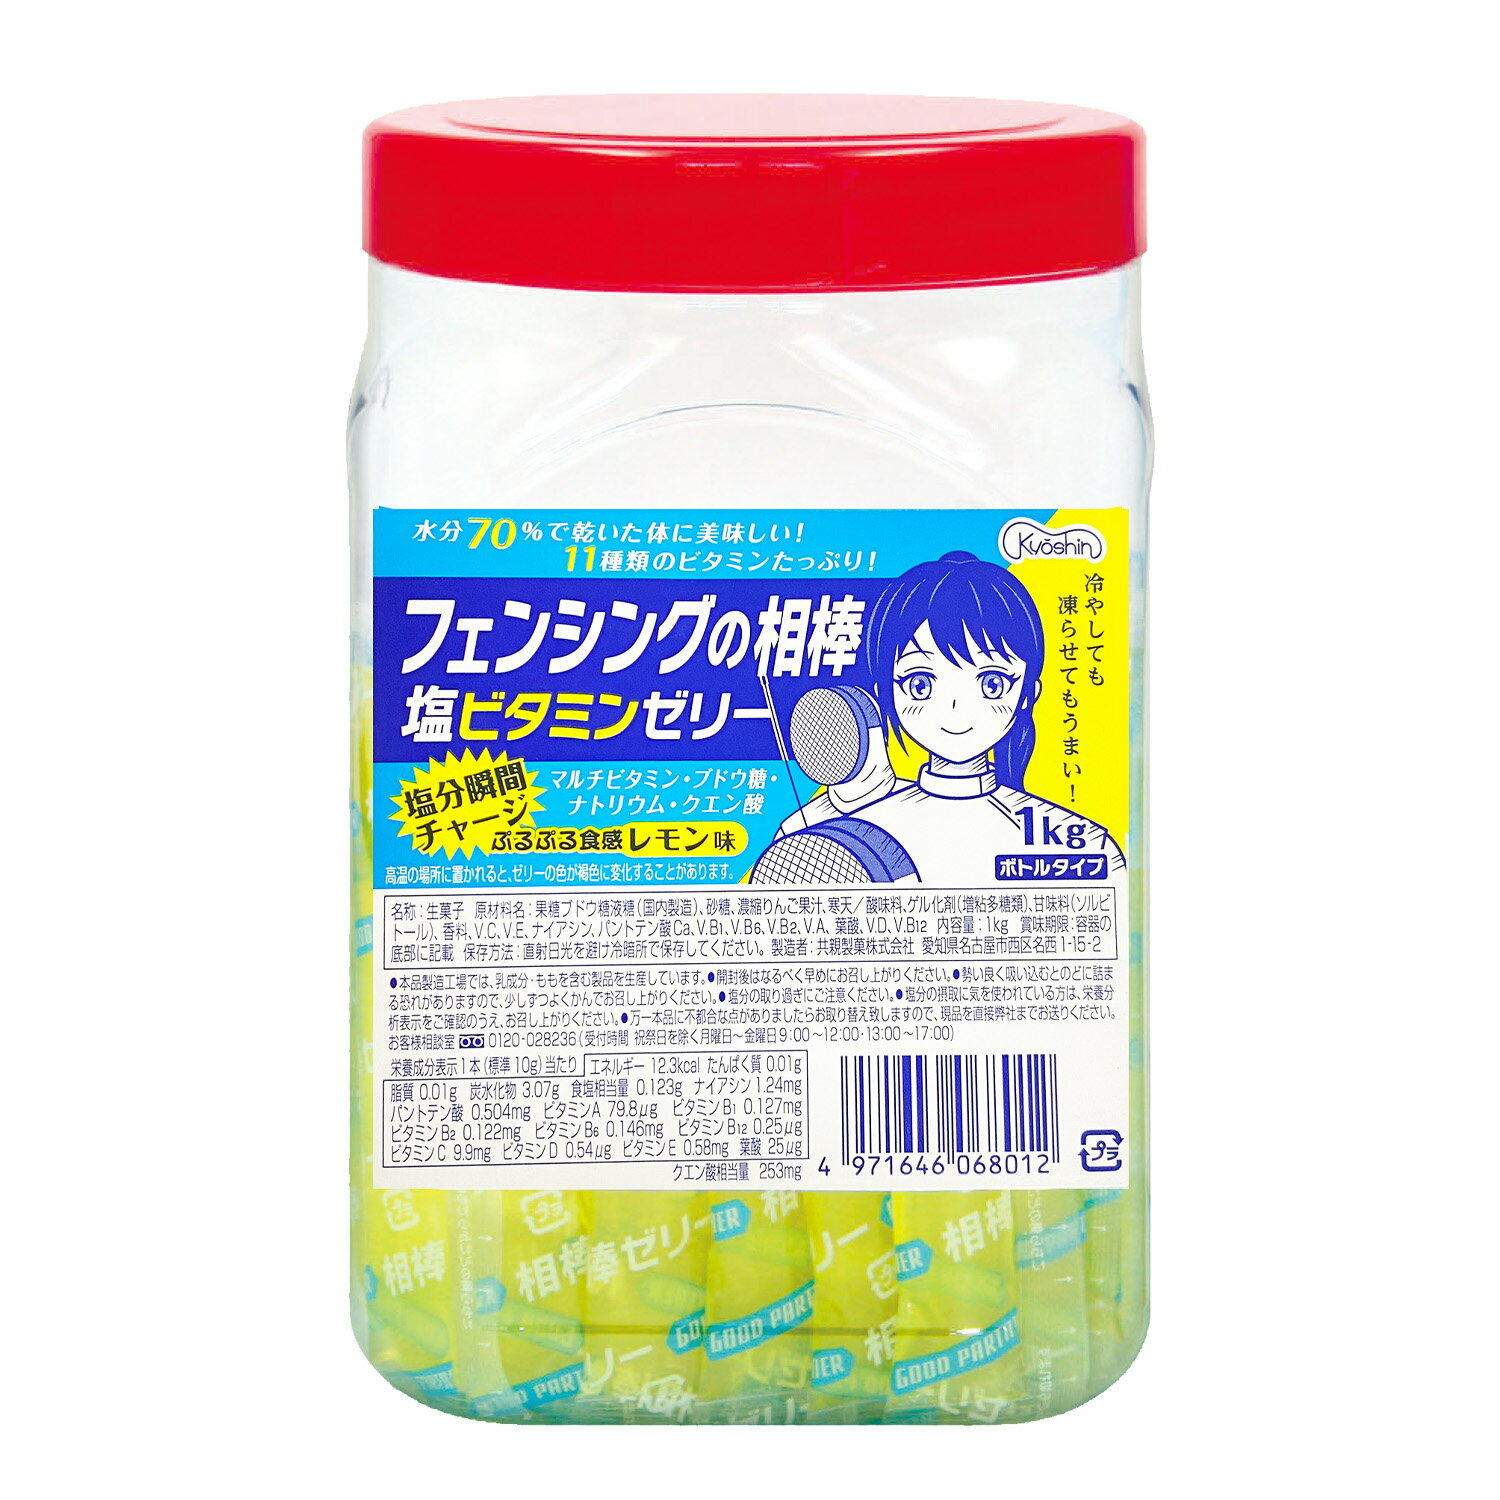 共親製菓 フェンシングの相棒 塩ビタミンゼリー 1kgボトルタイプ 約100本入